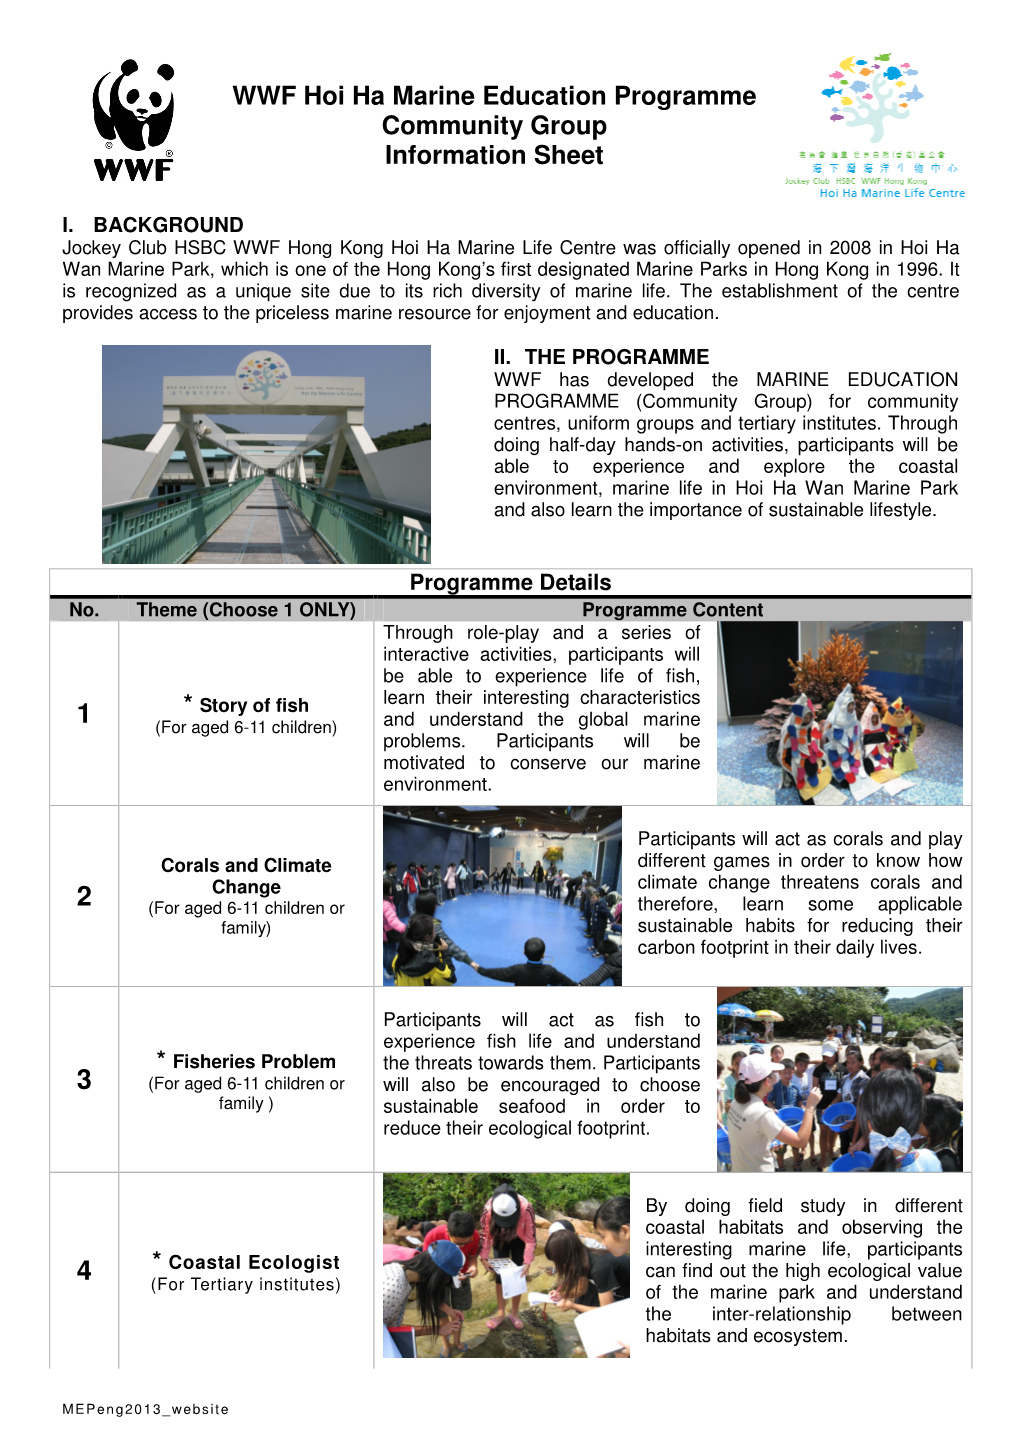 WWF Hoi Ha Marine Education Programme Community Group Information Sheet